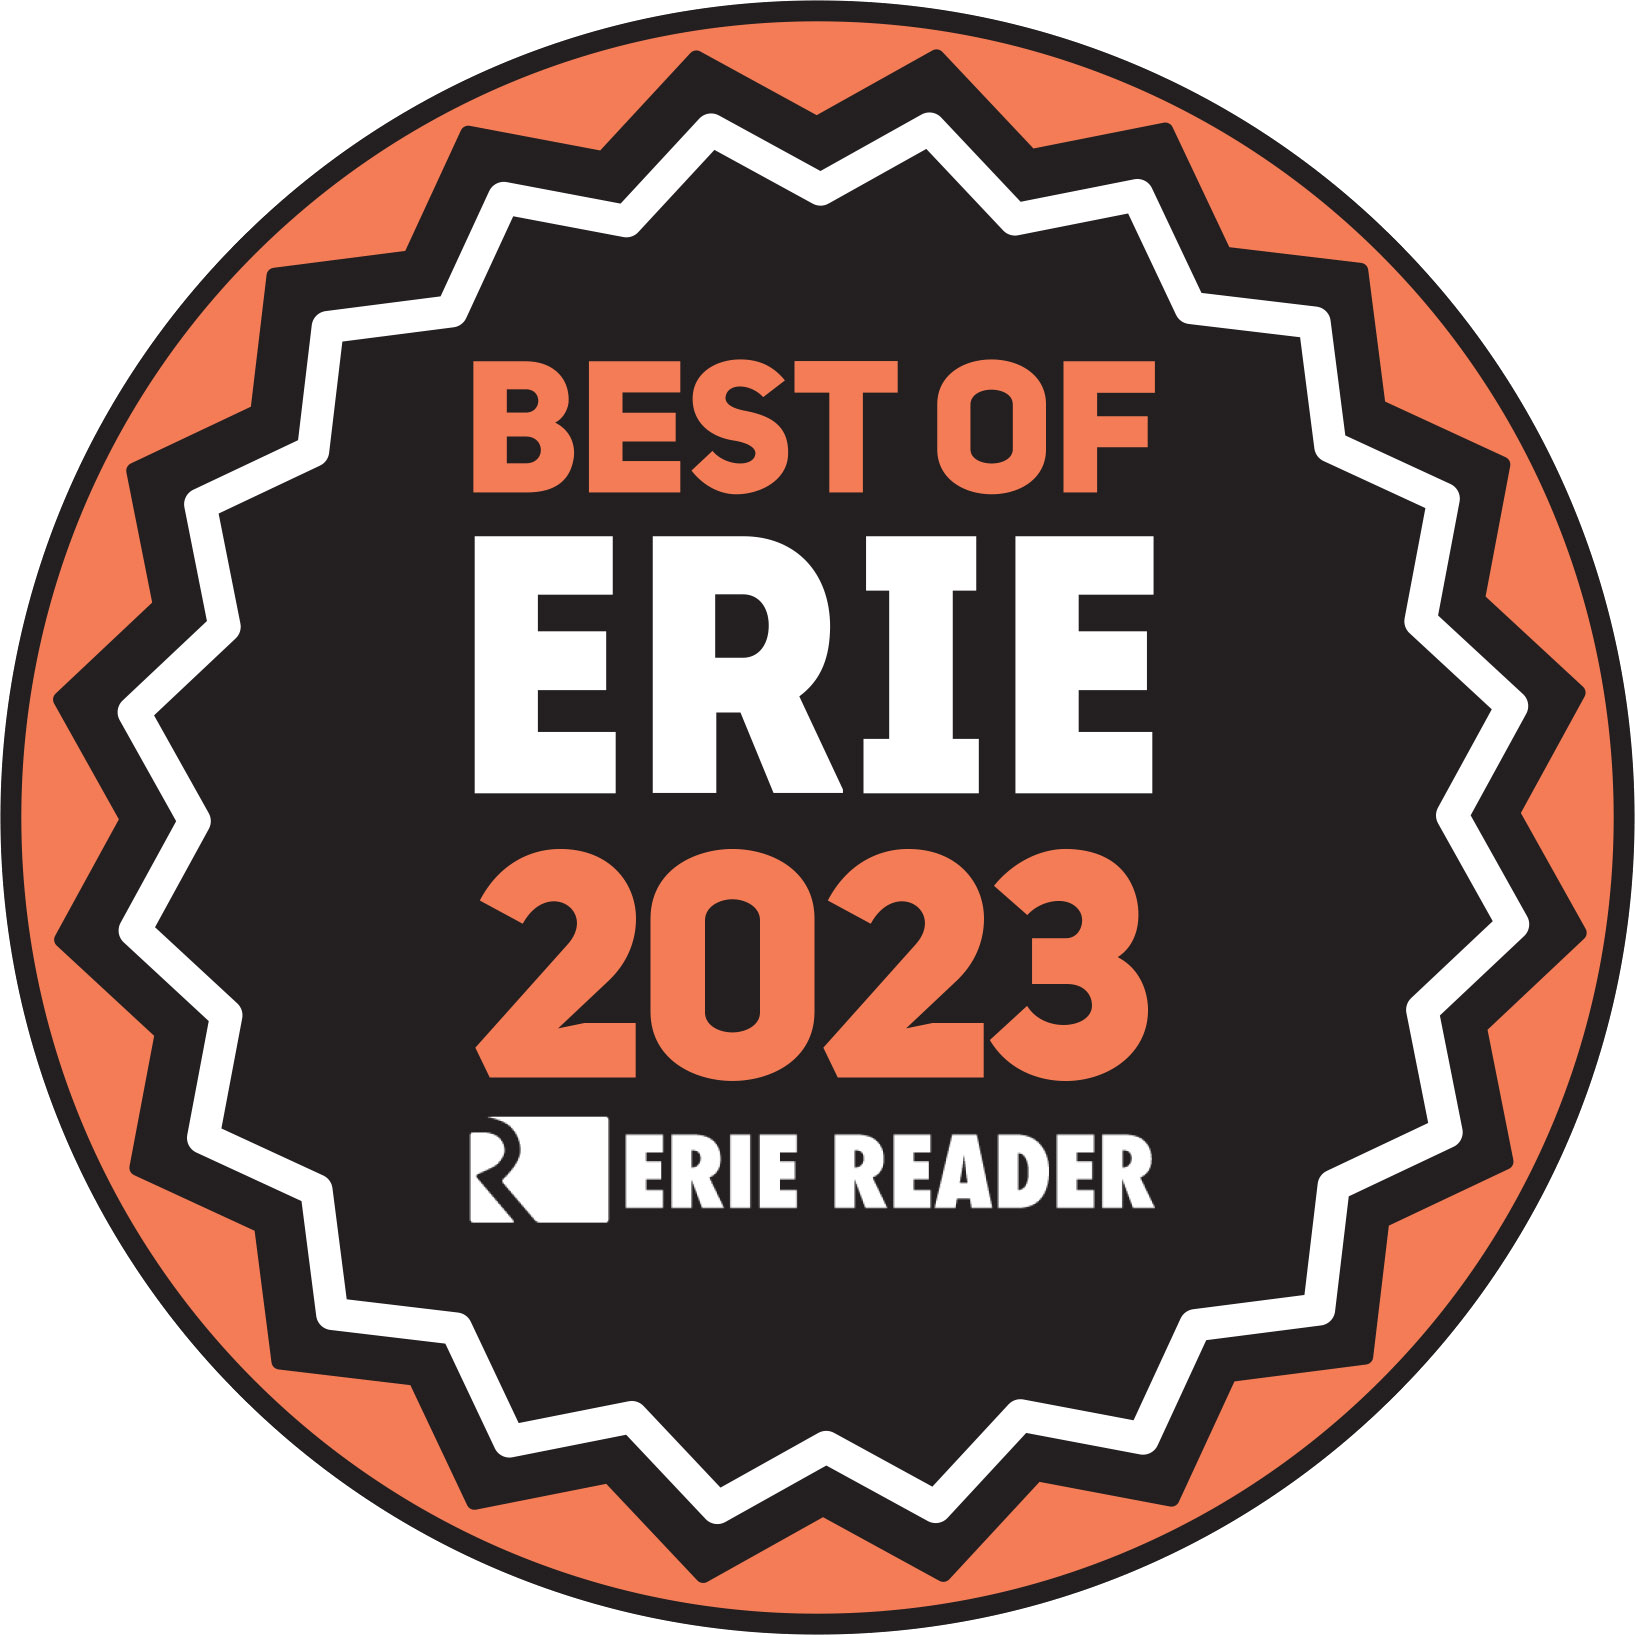 Finalist, Best of Erie Awards 2023 - Erie Reader